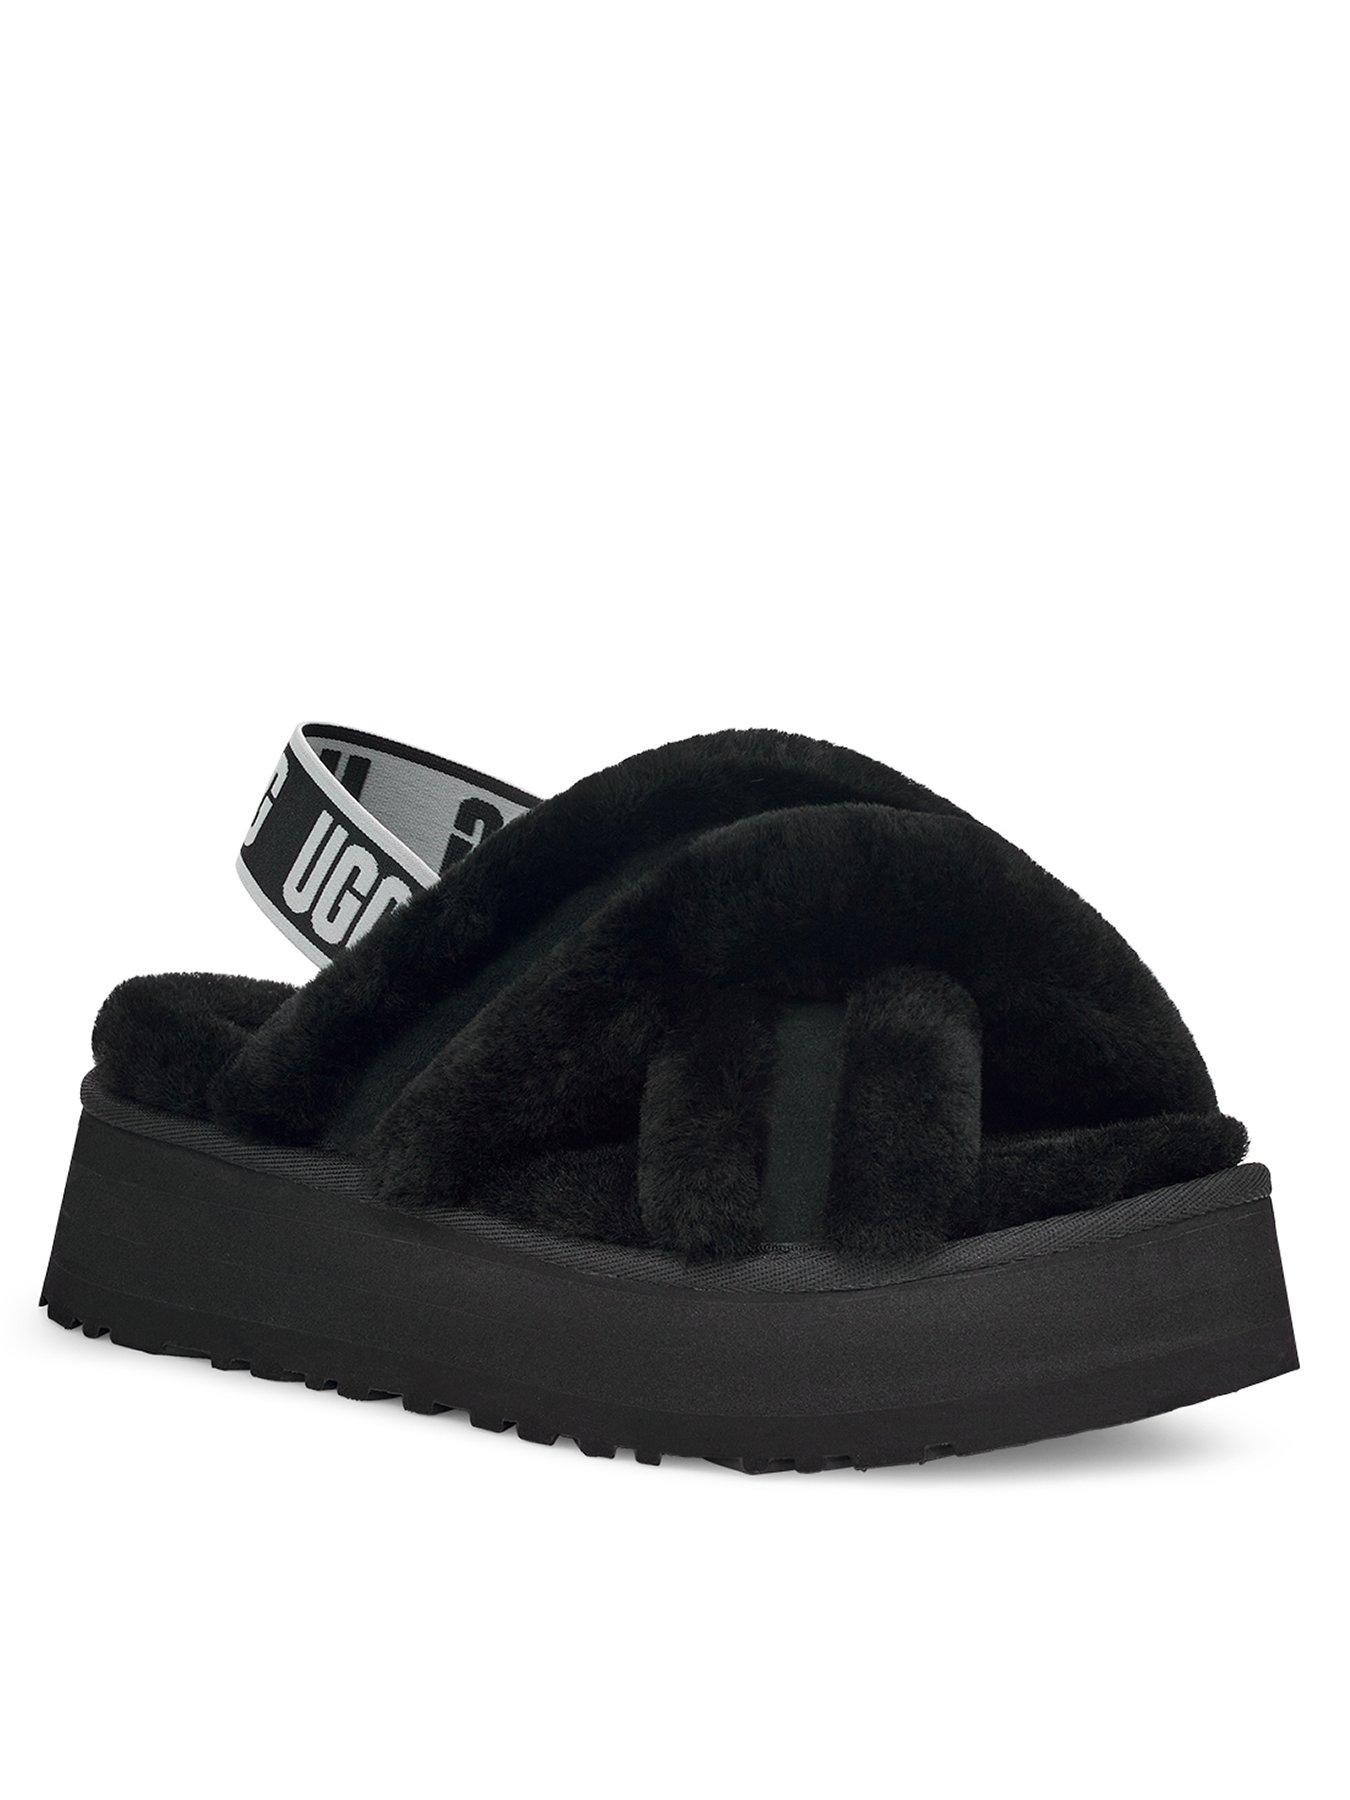 Nightwear & Loungewear Disco Cross Slide Slippers - Black